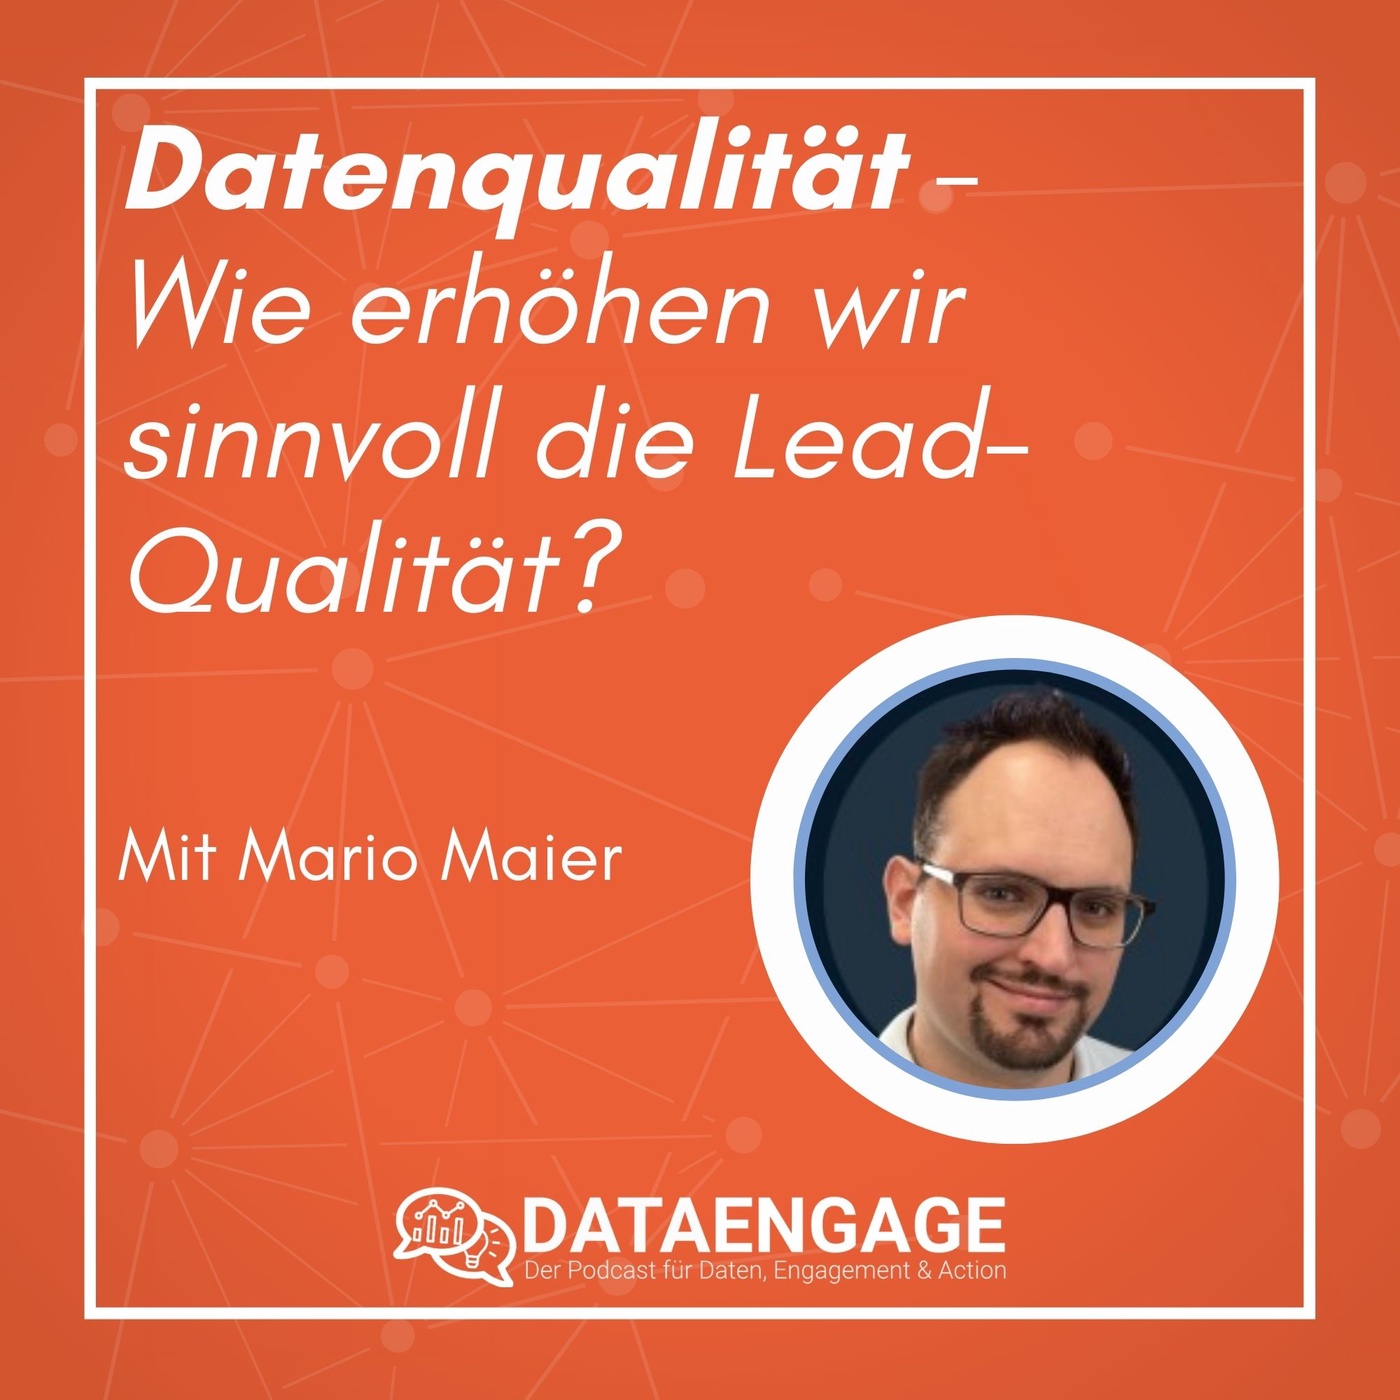 Datenqualität - Wie erhöhen wir sinnvoll die Lead-Qualität? mit Mario Maier